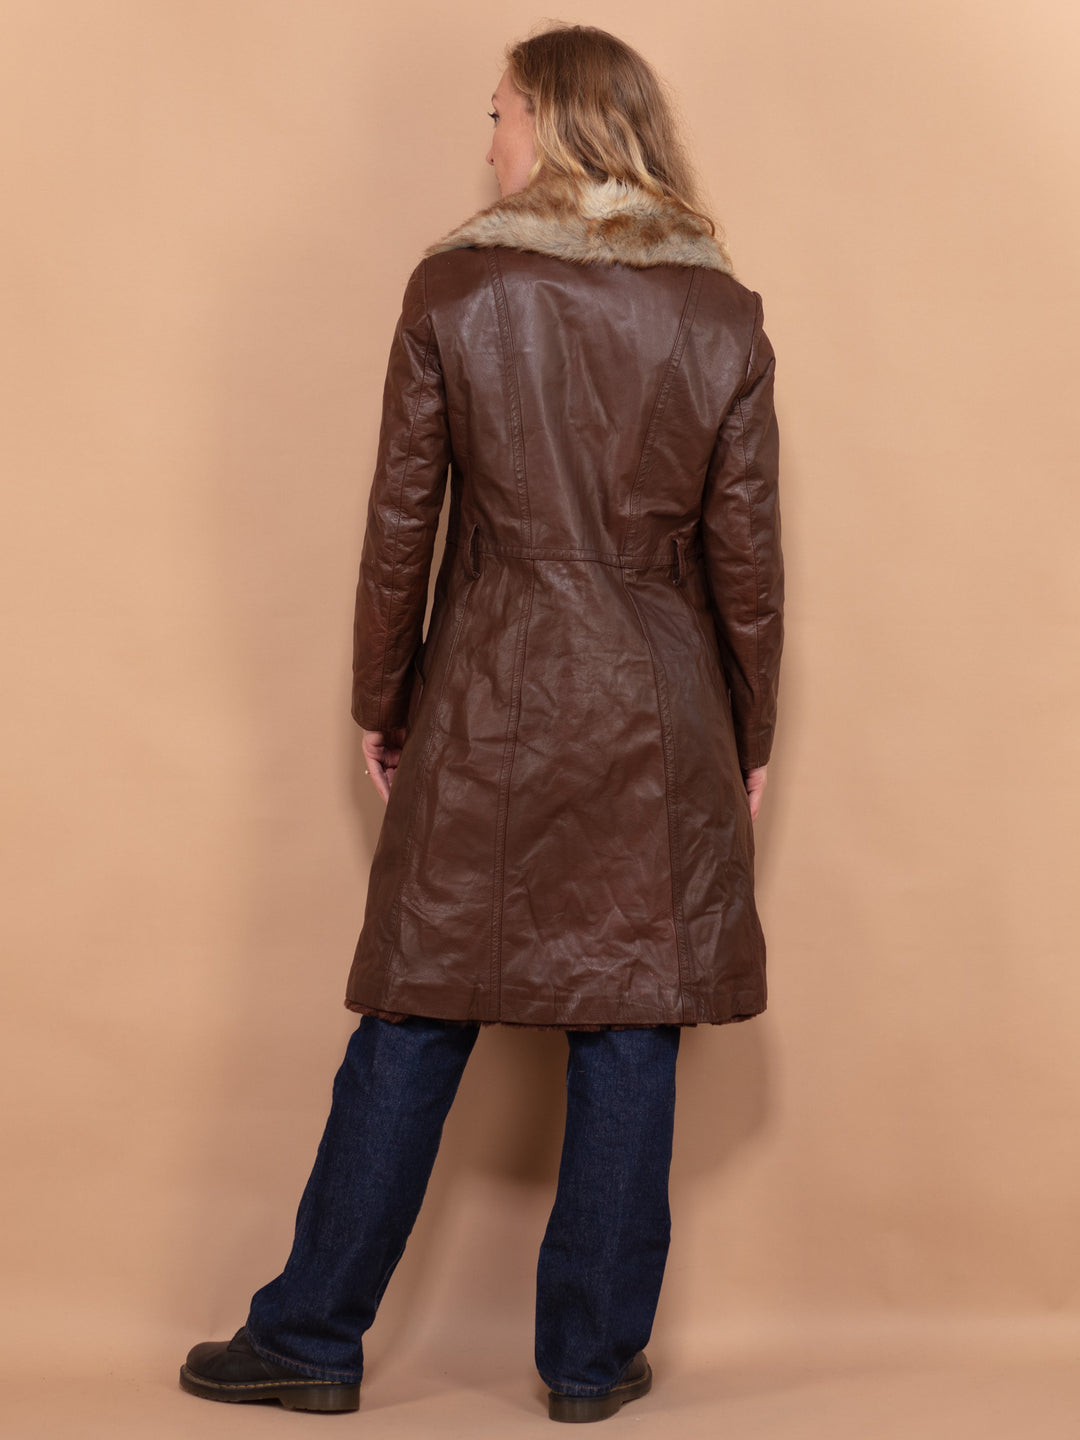 Leather Fur Coat, Size Small S, Made In Paris, Vintage Fur Coat, Brown Fur Coat, Leather Shearl Coat, Penny Lane, Elegant Retro Fur Coat